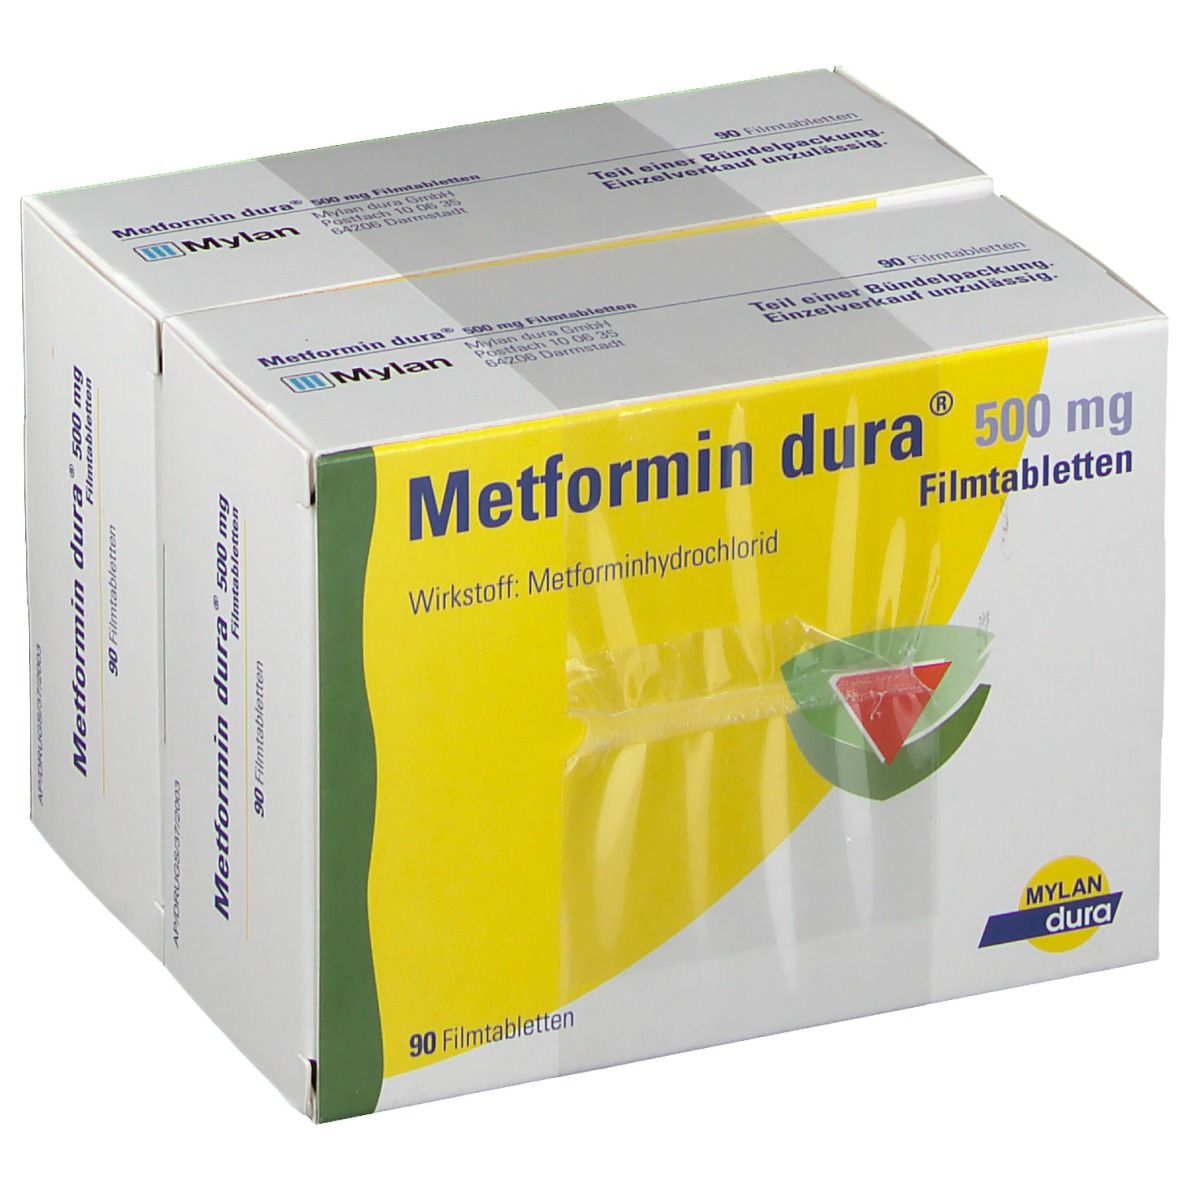 METFORMIN dura 500 mg Filmtabletten